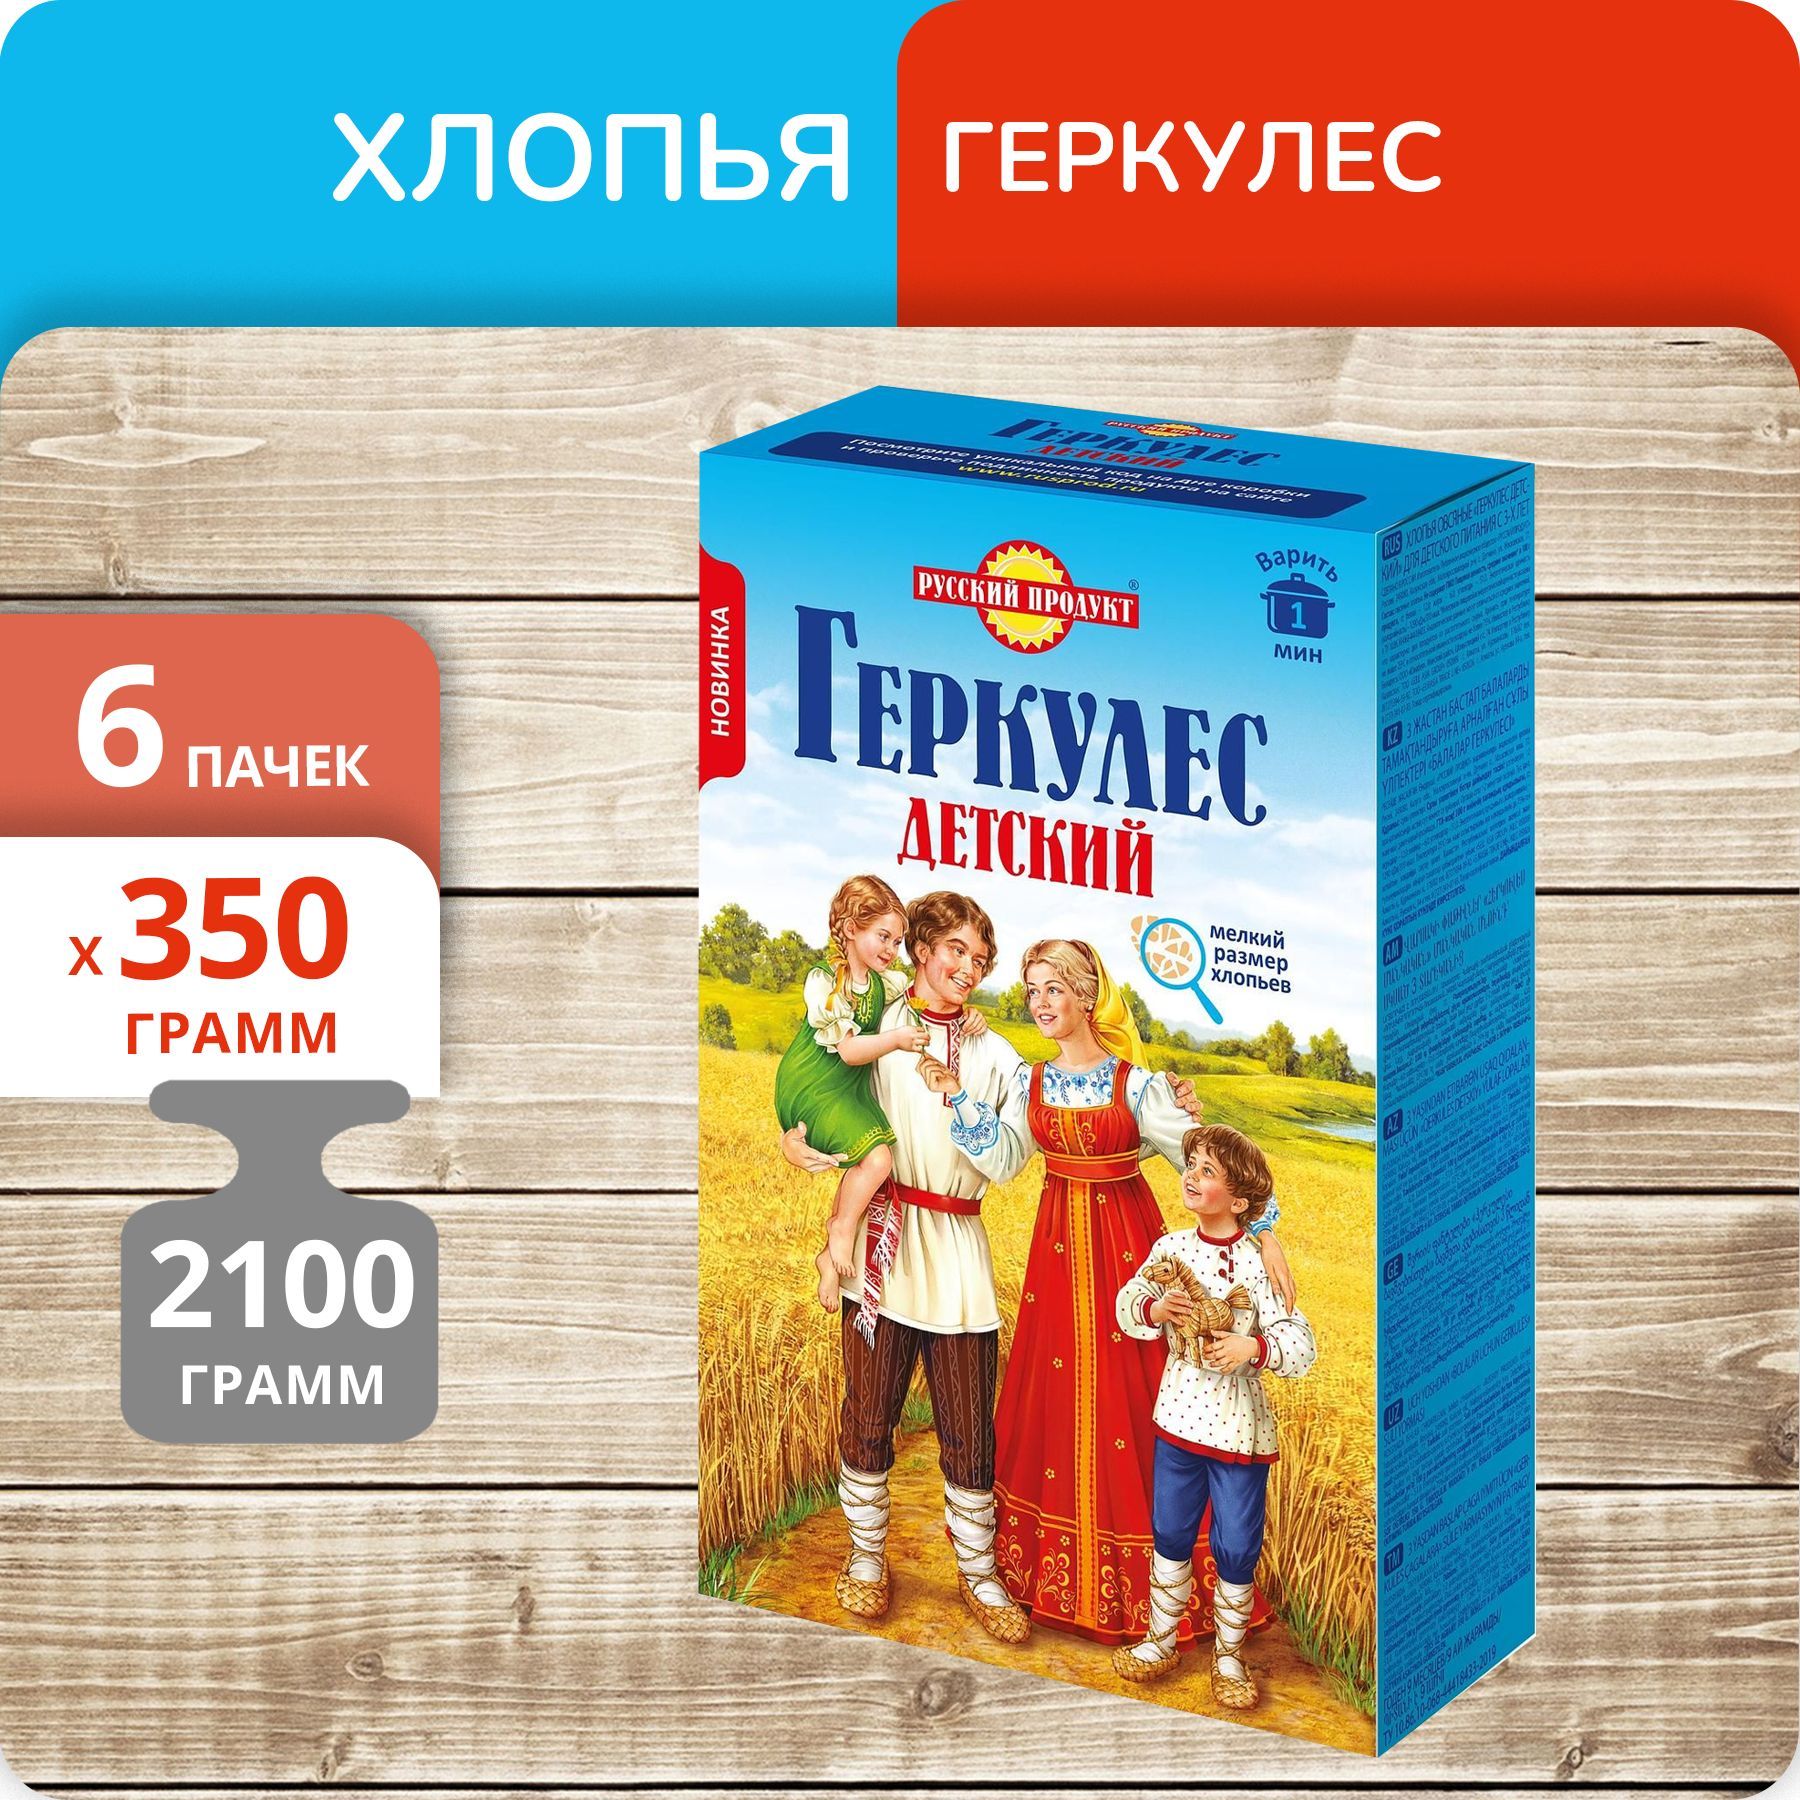 Геркулес Русский продукт Детский овсяные хлопья 350г, 6 пачек